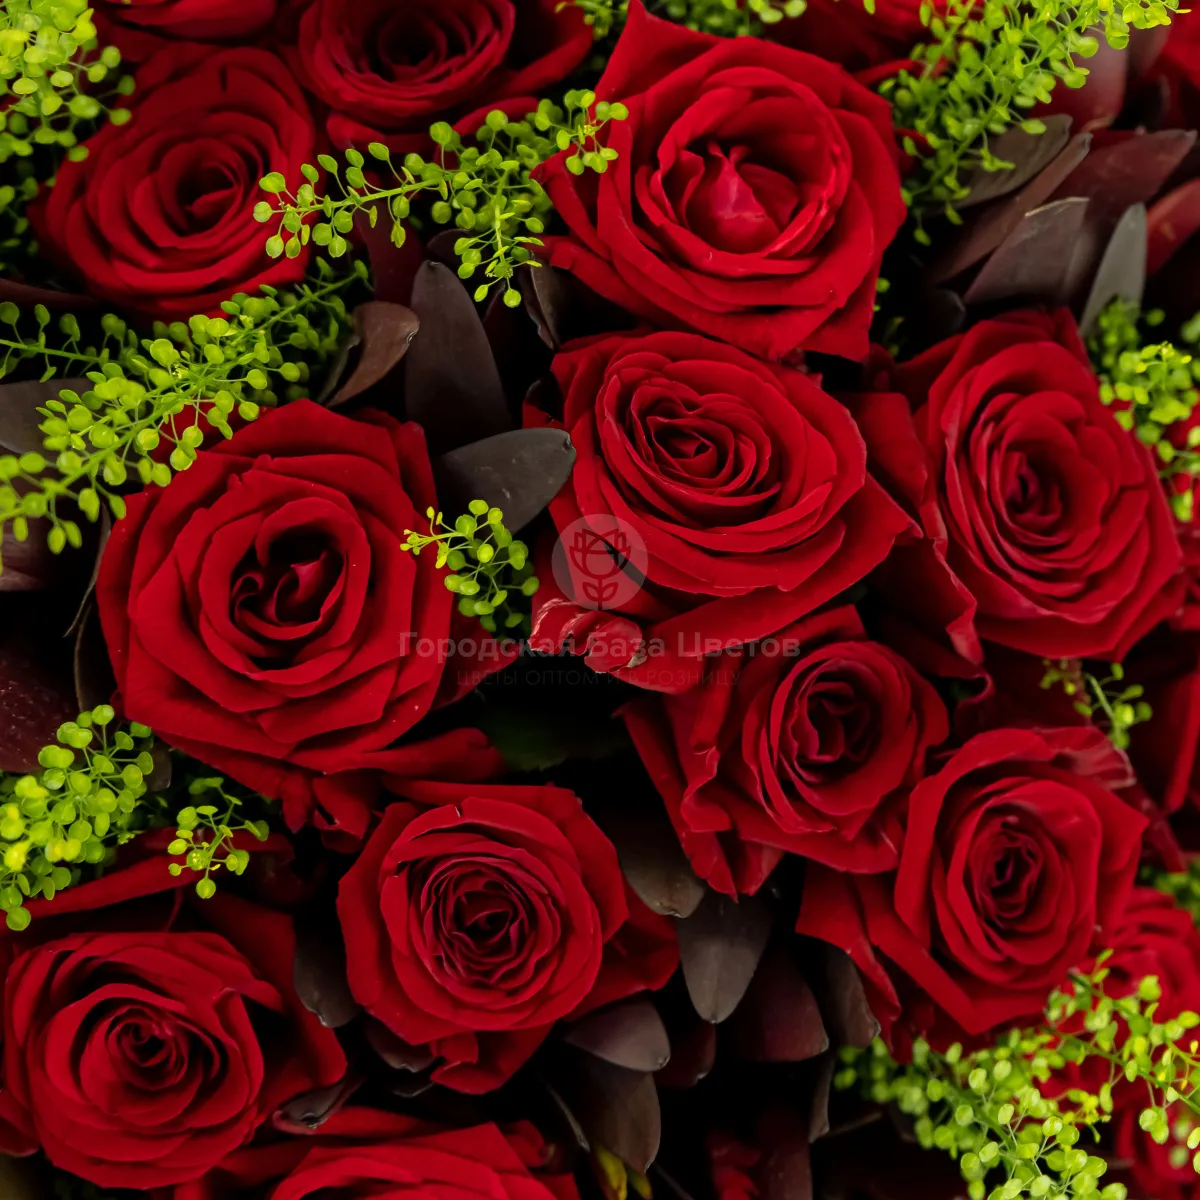 Букет из 35 красных роз (50 см)